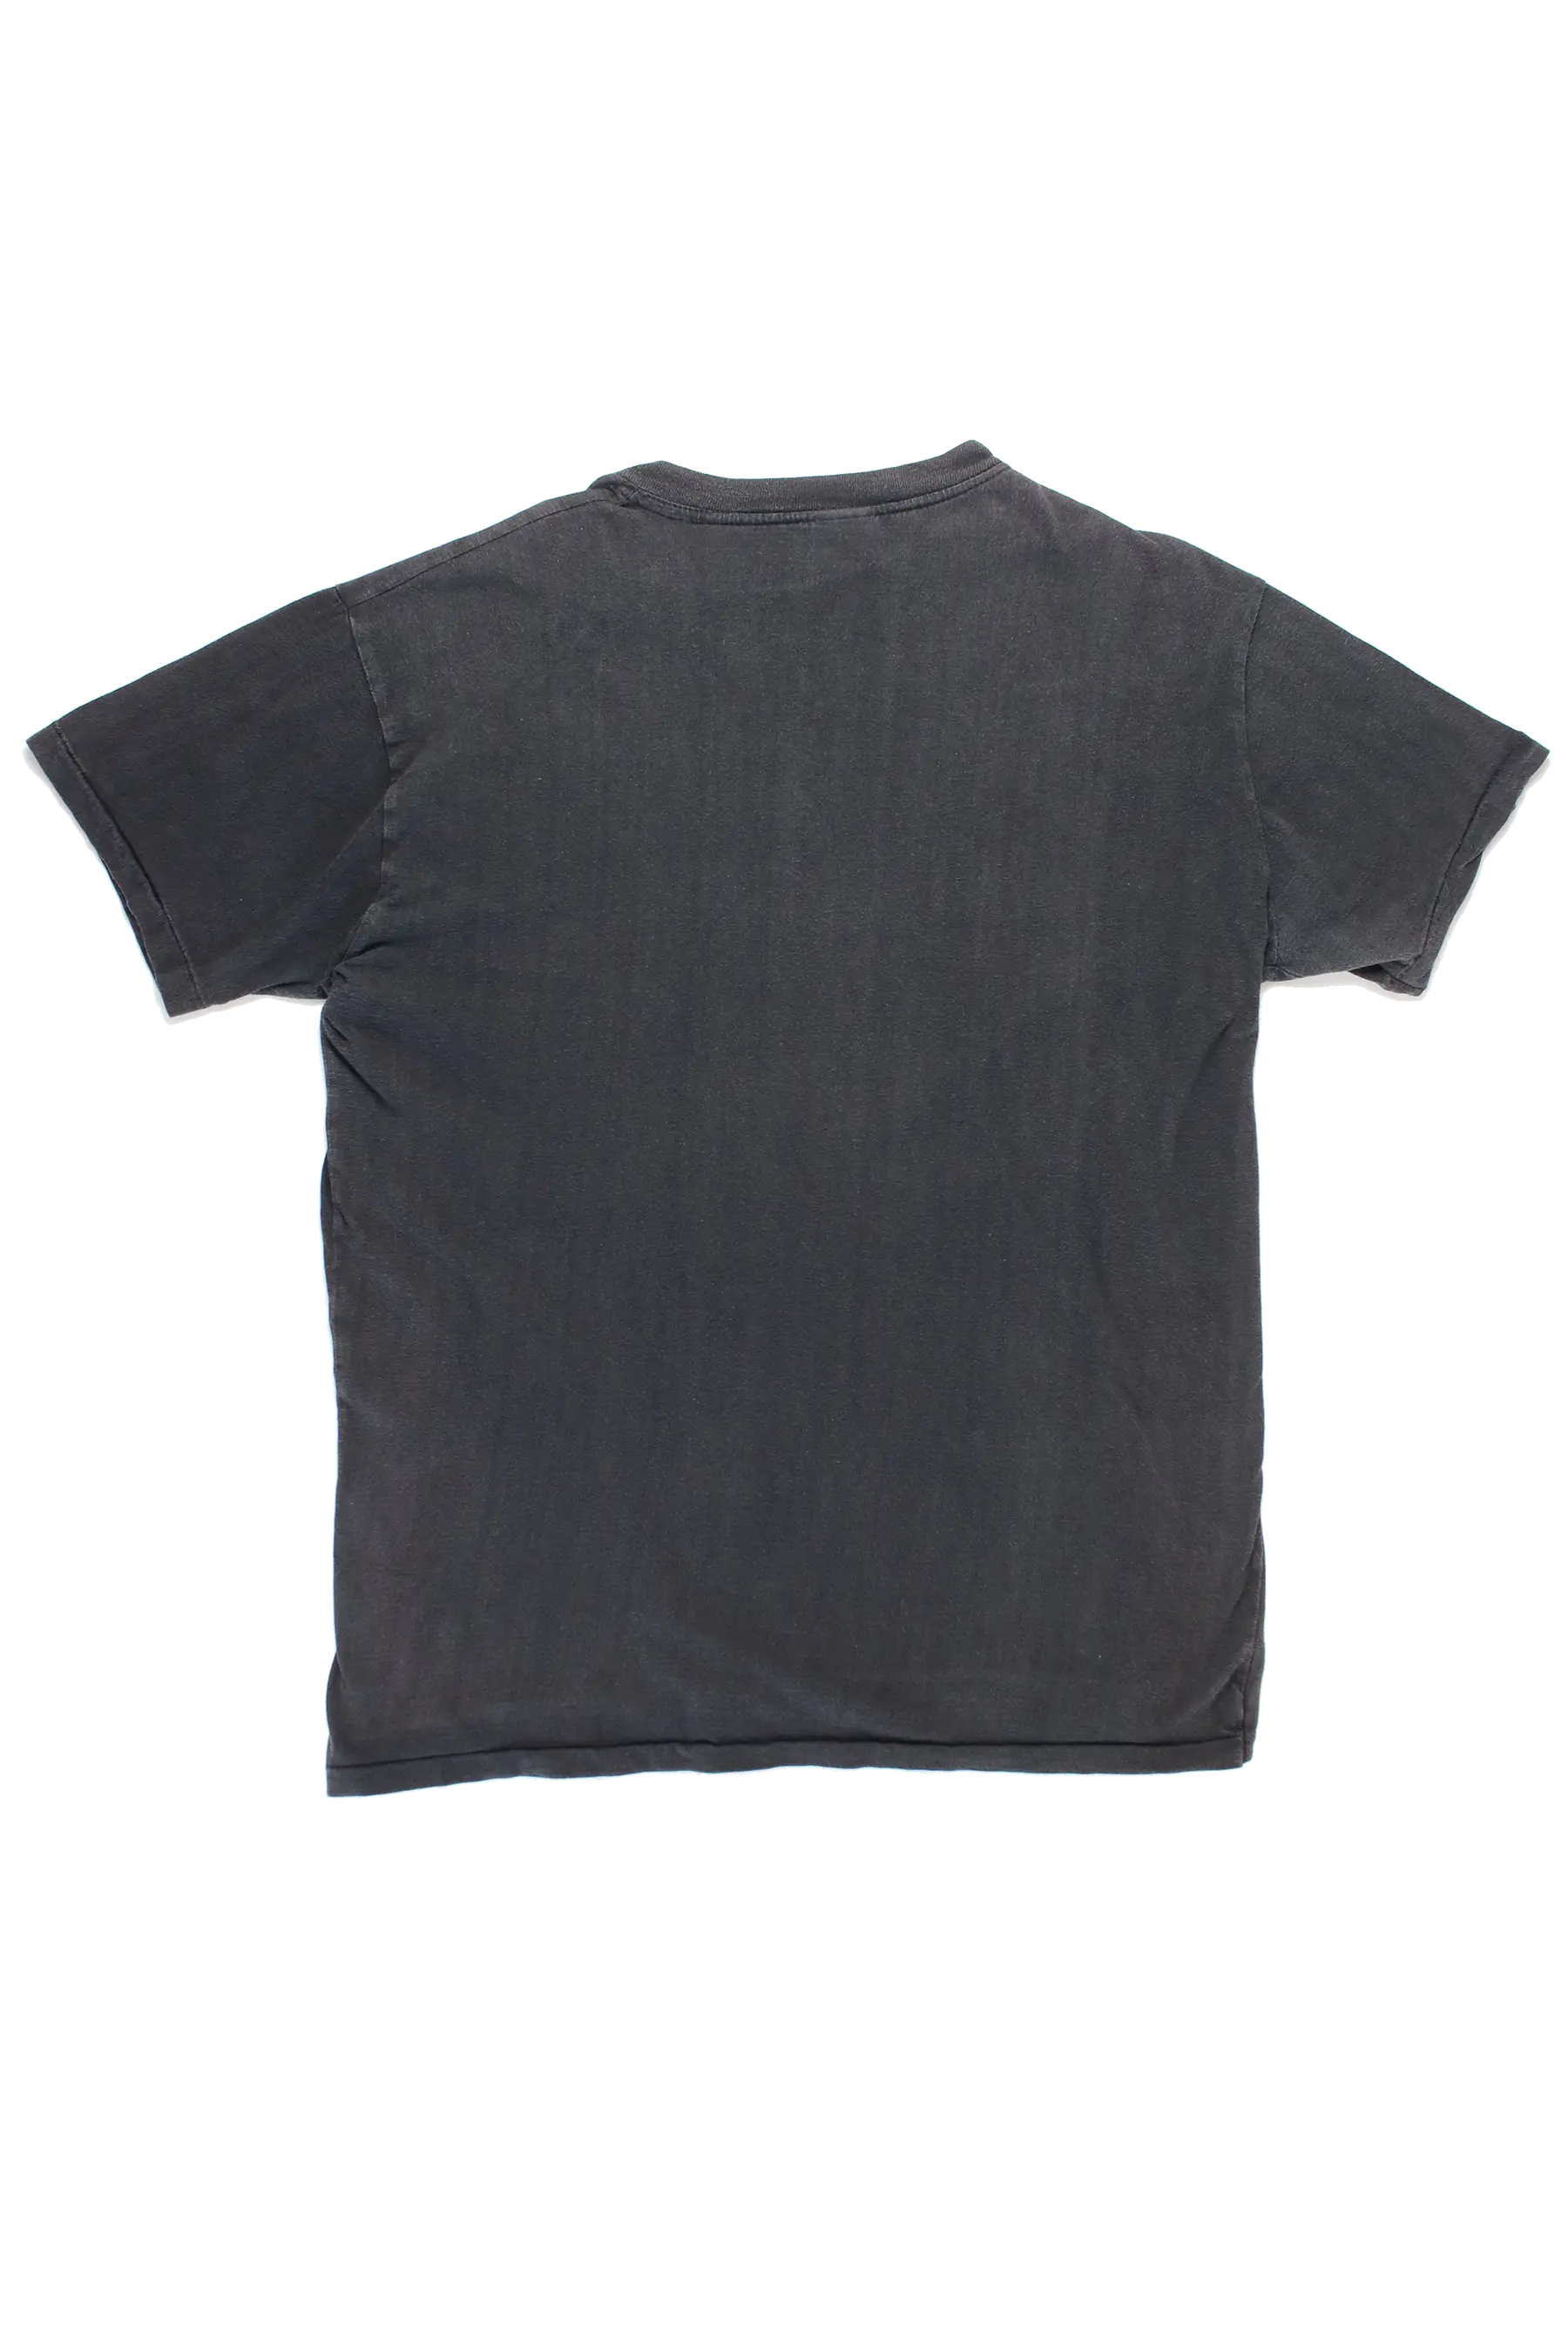 Stihl Single Stitch T-Shirt